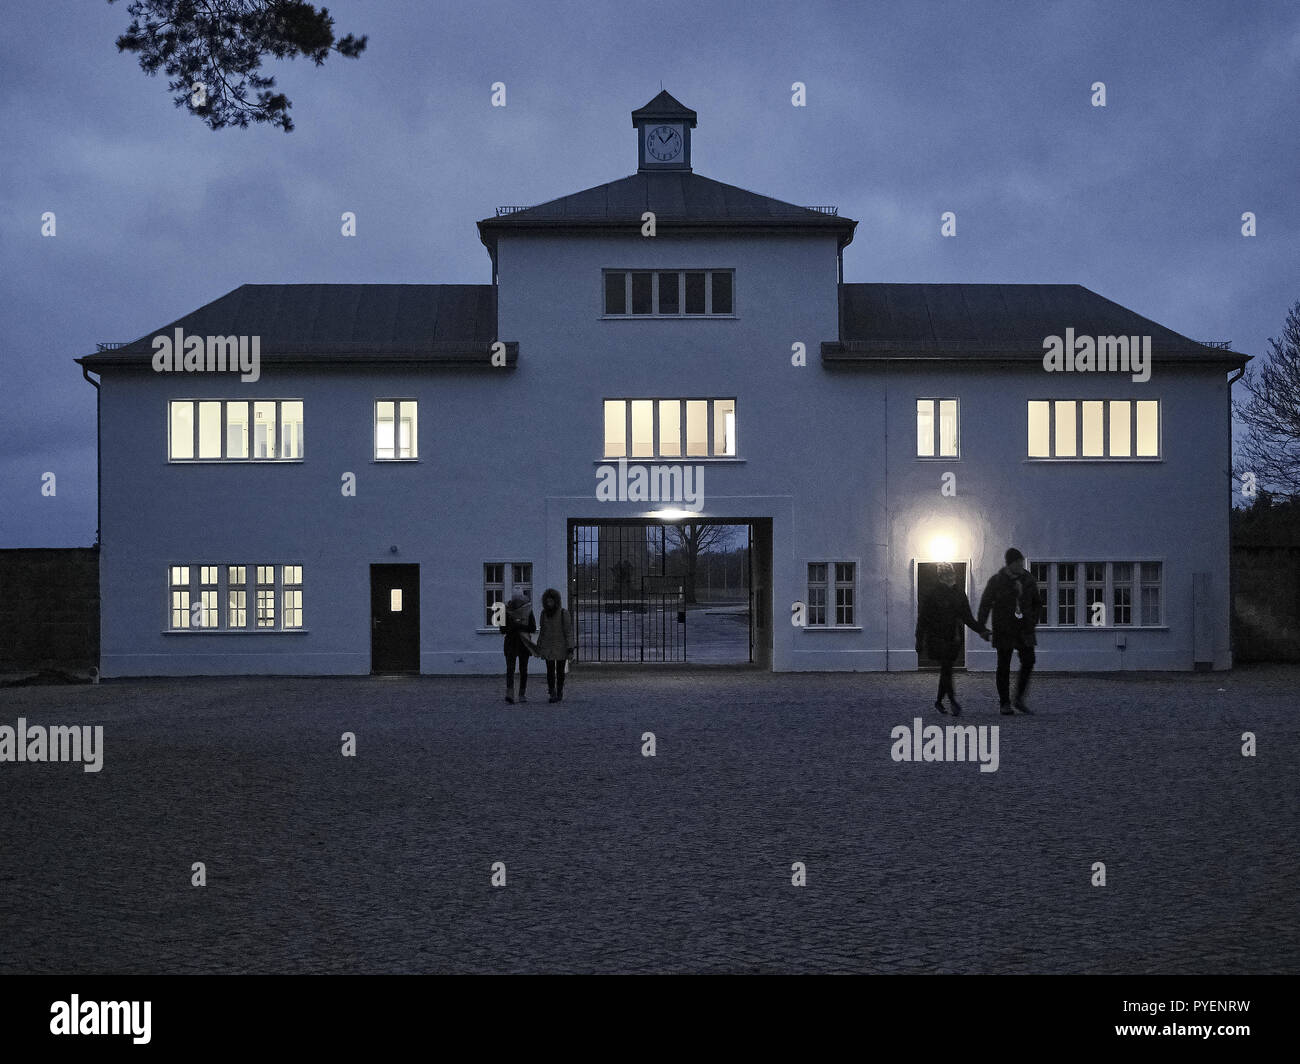 Orianenburg, Deutschland - Dezember 12, 2017: Das Gebäude, der Haupteingang zur kaserne Feld an das Konzentrationslager Sachsenhausen repräsentiert Stockfoto